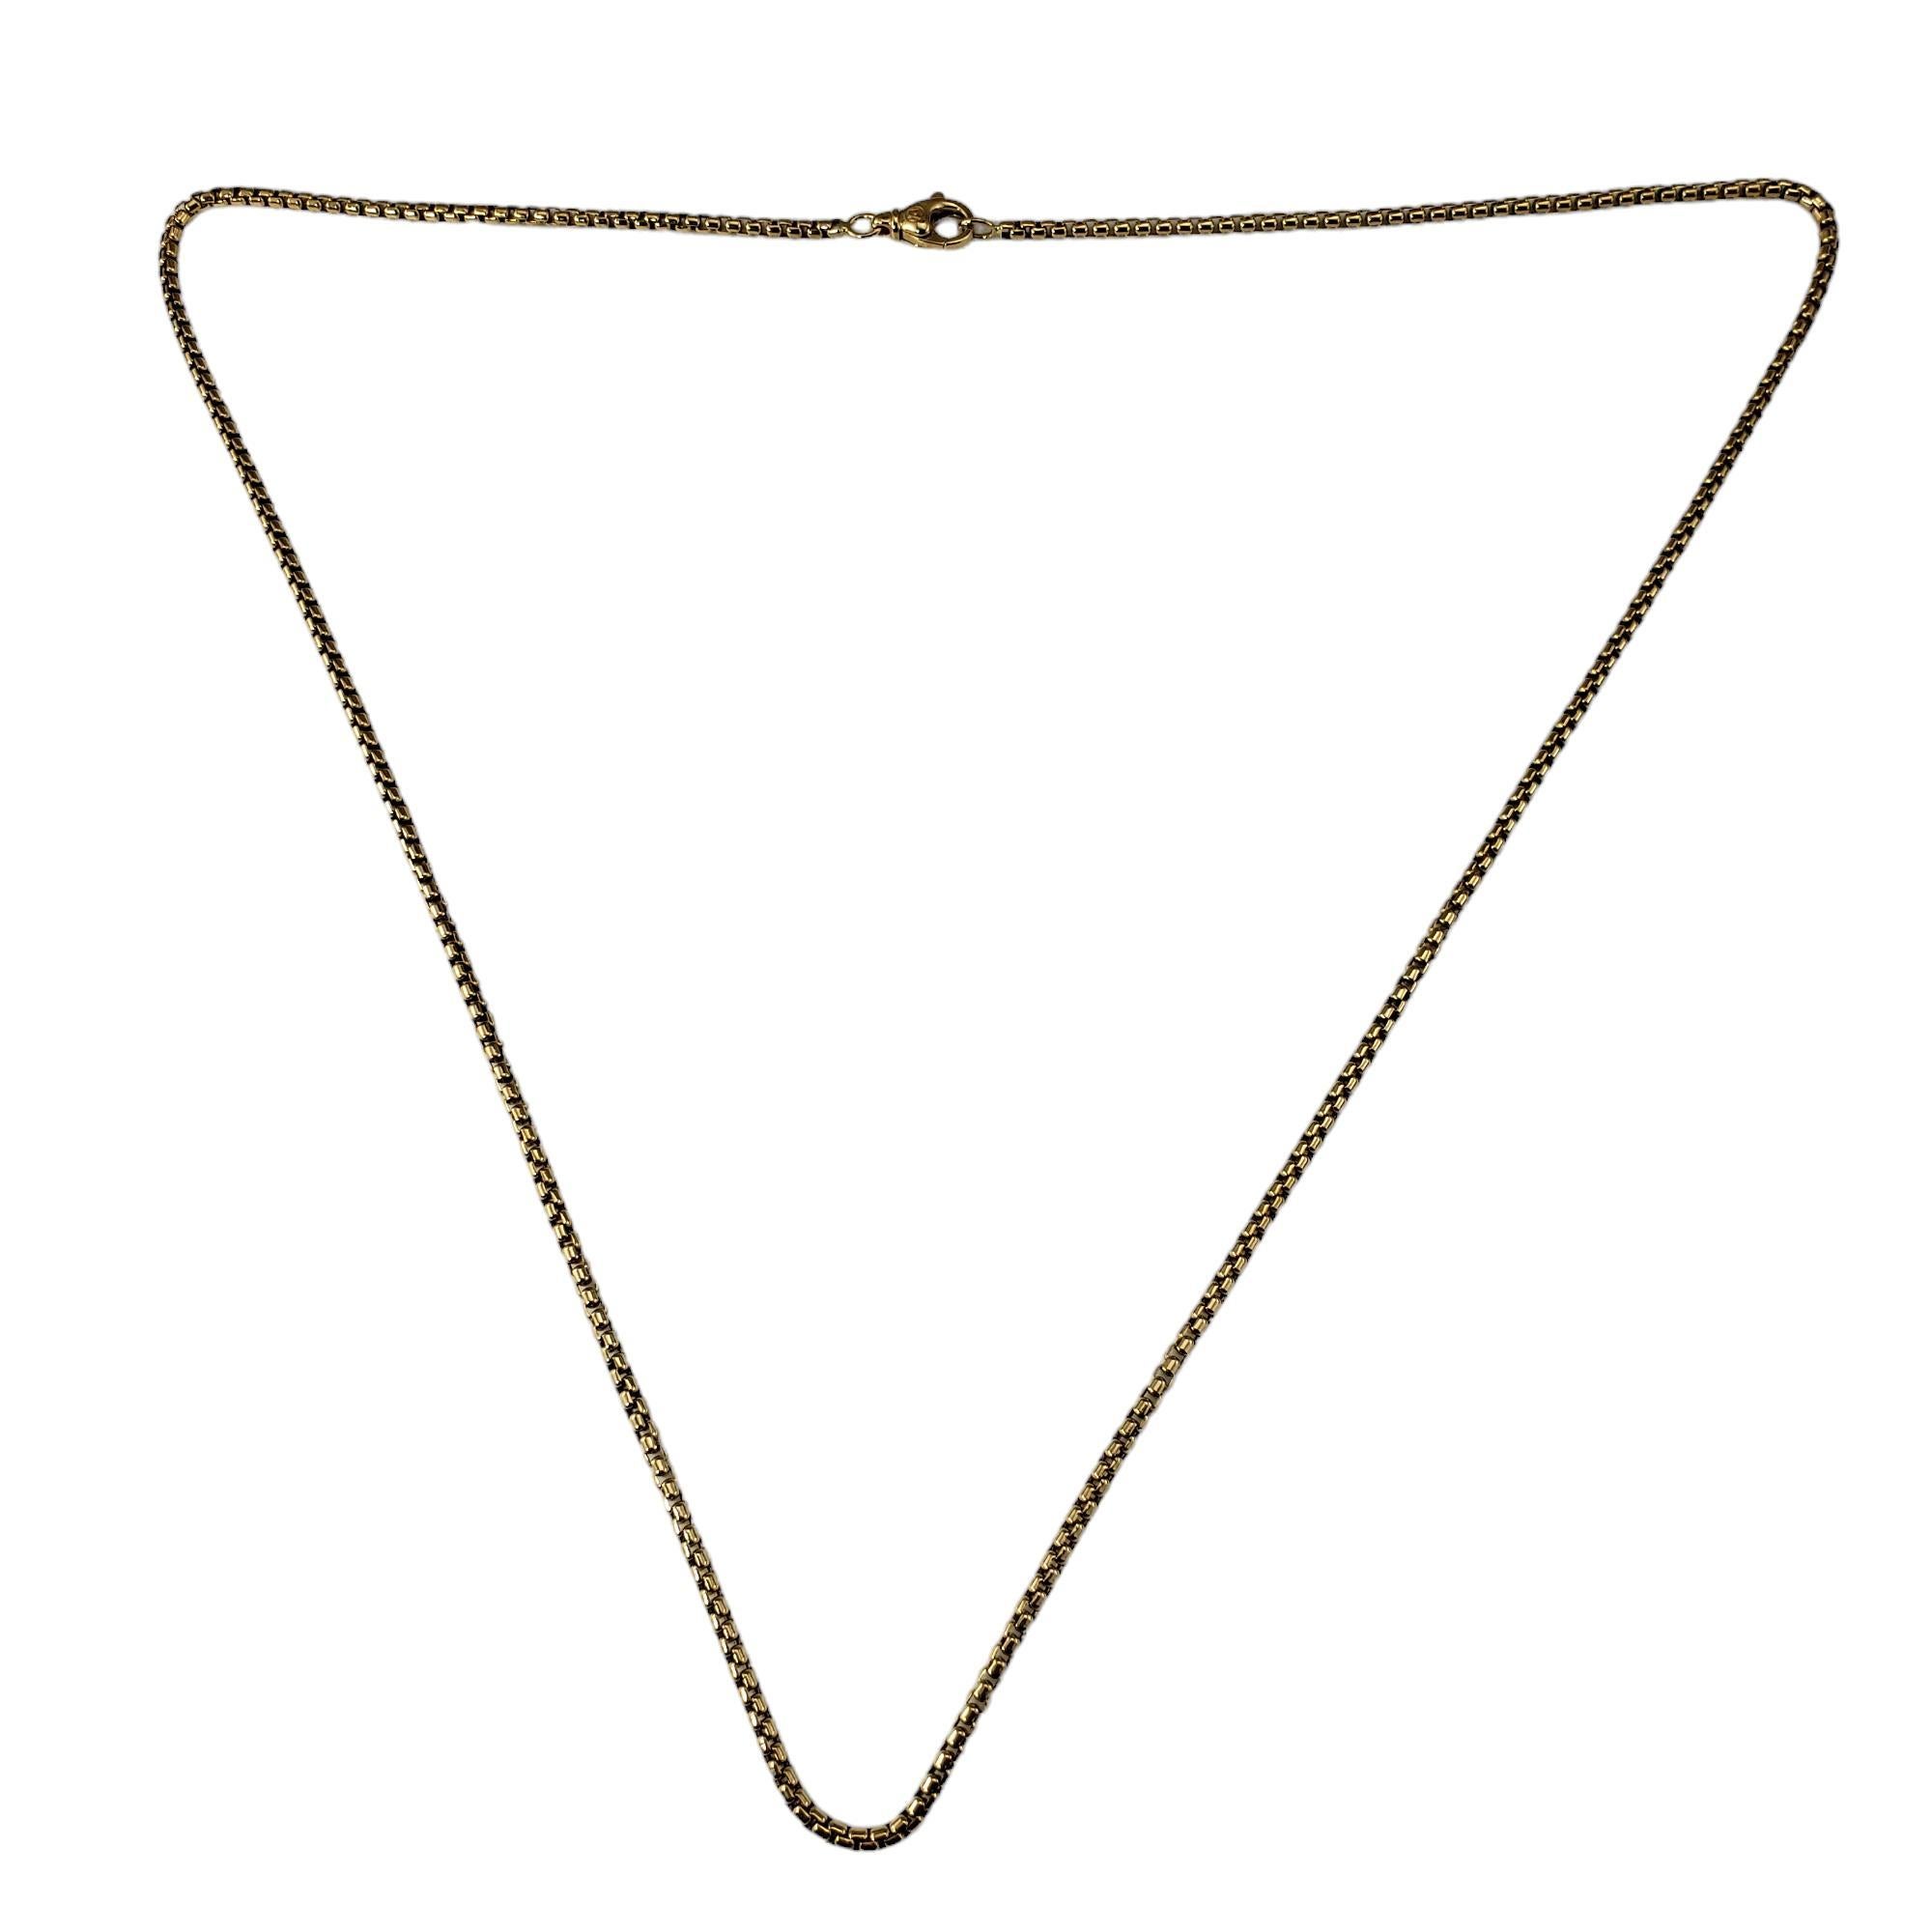 David Yurman 18K Gelbgold Box Kette Halskette-

Diese elegante, kastenförmige Halskette von David Yurman ist aus klassischem 18-karätigem Gelbgold gefertigt.  

Breite: 2.5 mm.

Größe:  26 Zoll

Punze: DY 750

Gewicht:  9,9 Gewicht / 15,4 gr.

Sehr